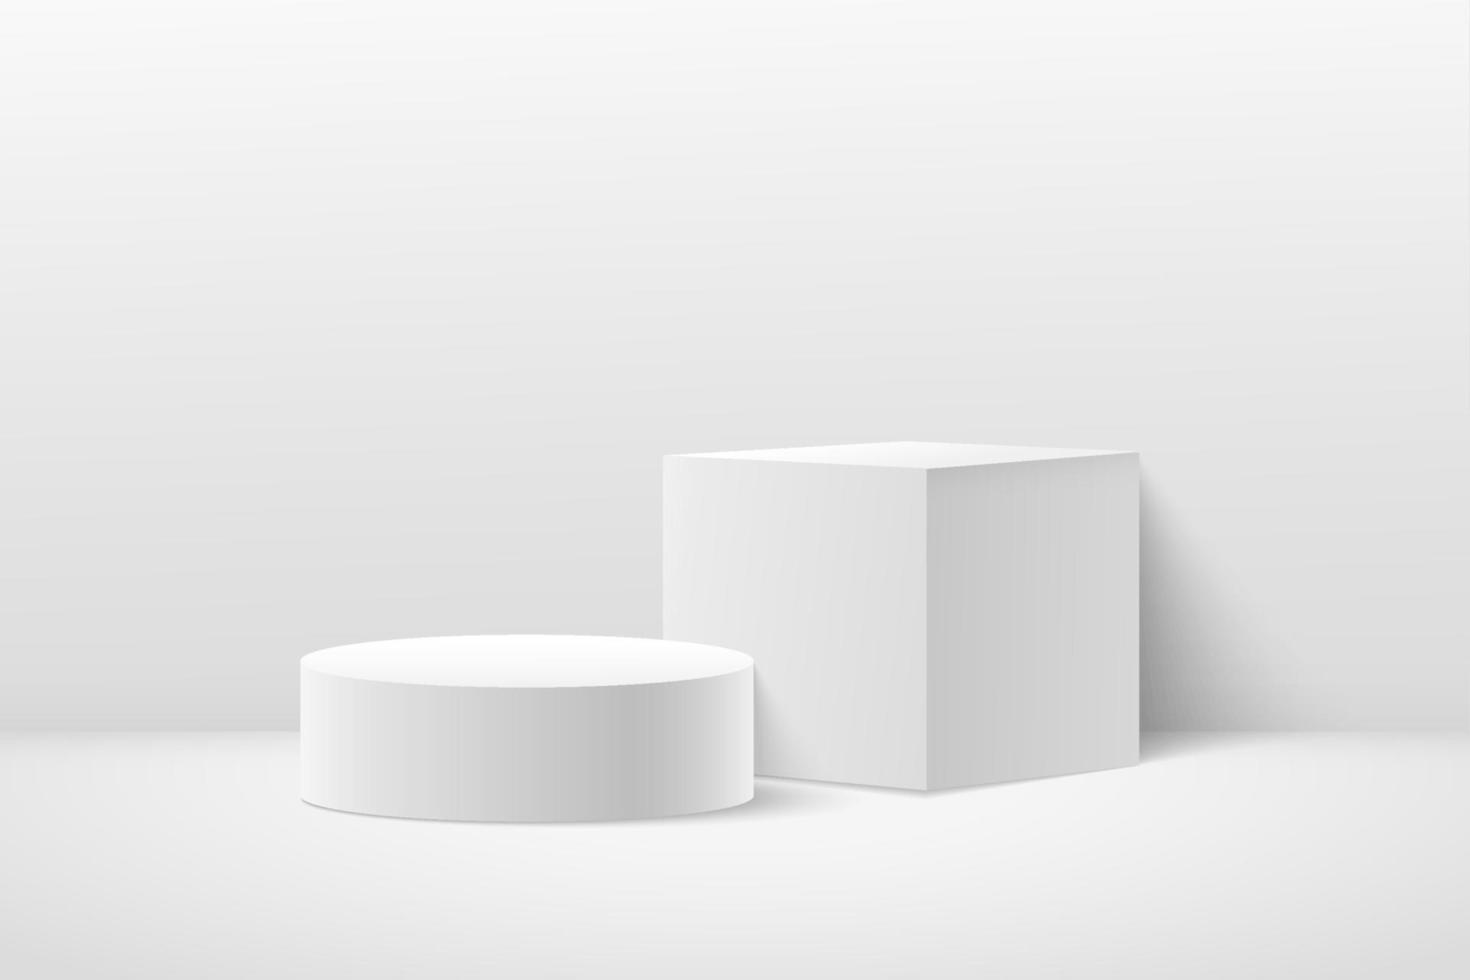 vetor abstrato renderizando forma 3d para apresentação de exibição de produtos cosméticos. moderno pódio de pedestal geométrico branco e cinza com fundo branco de sala vazia. sala de estúdio de cena mínima.